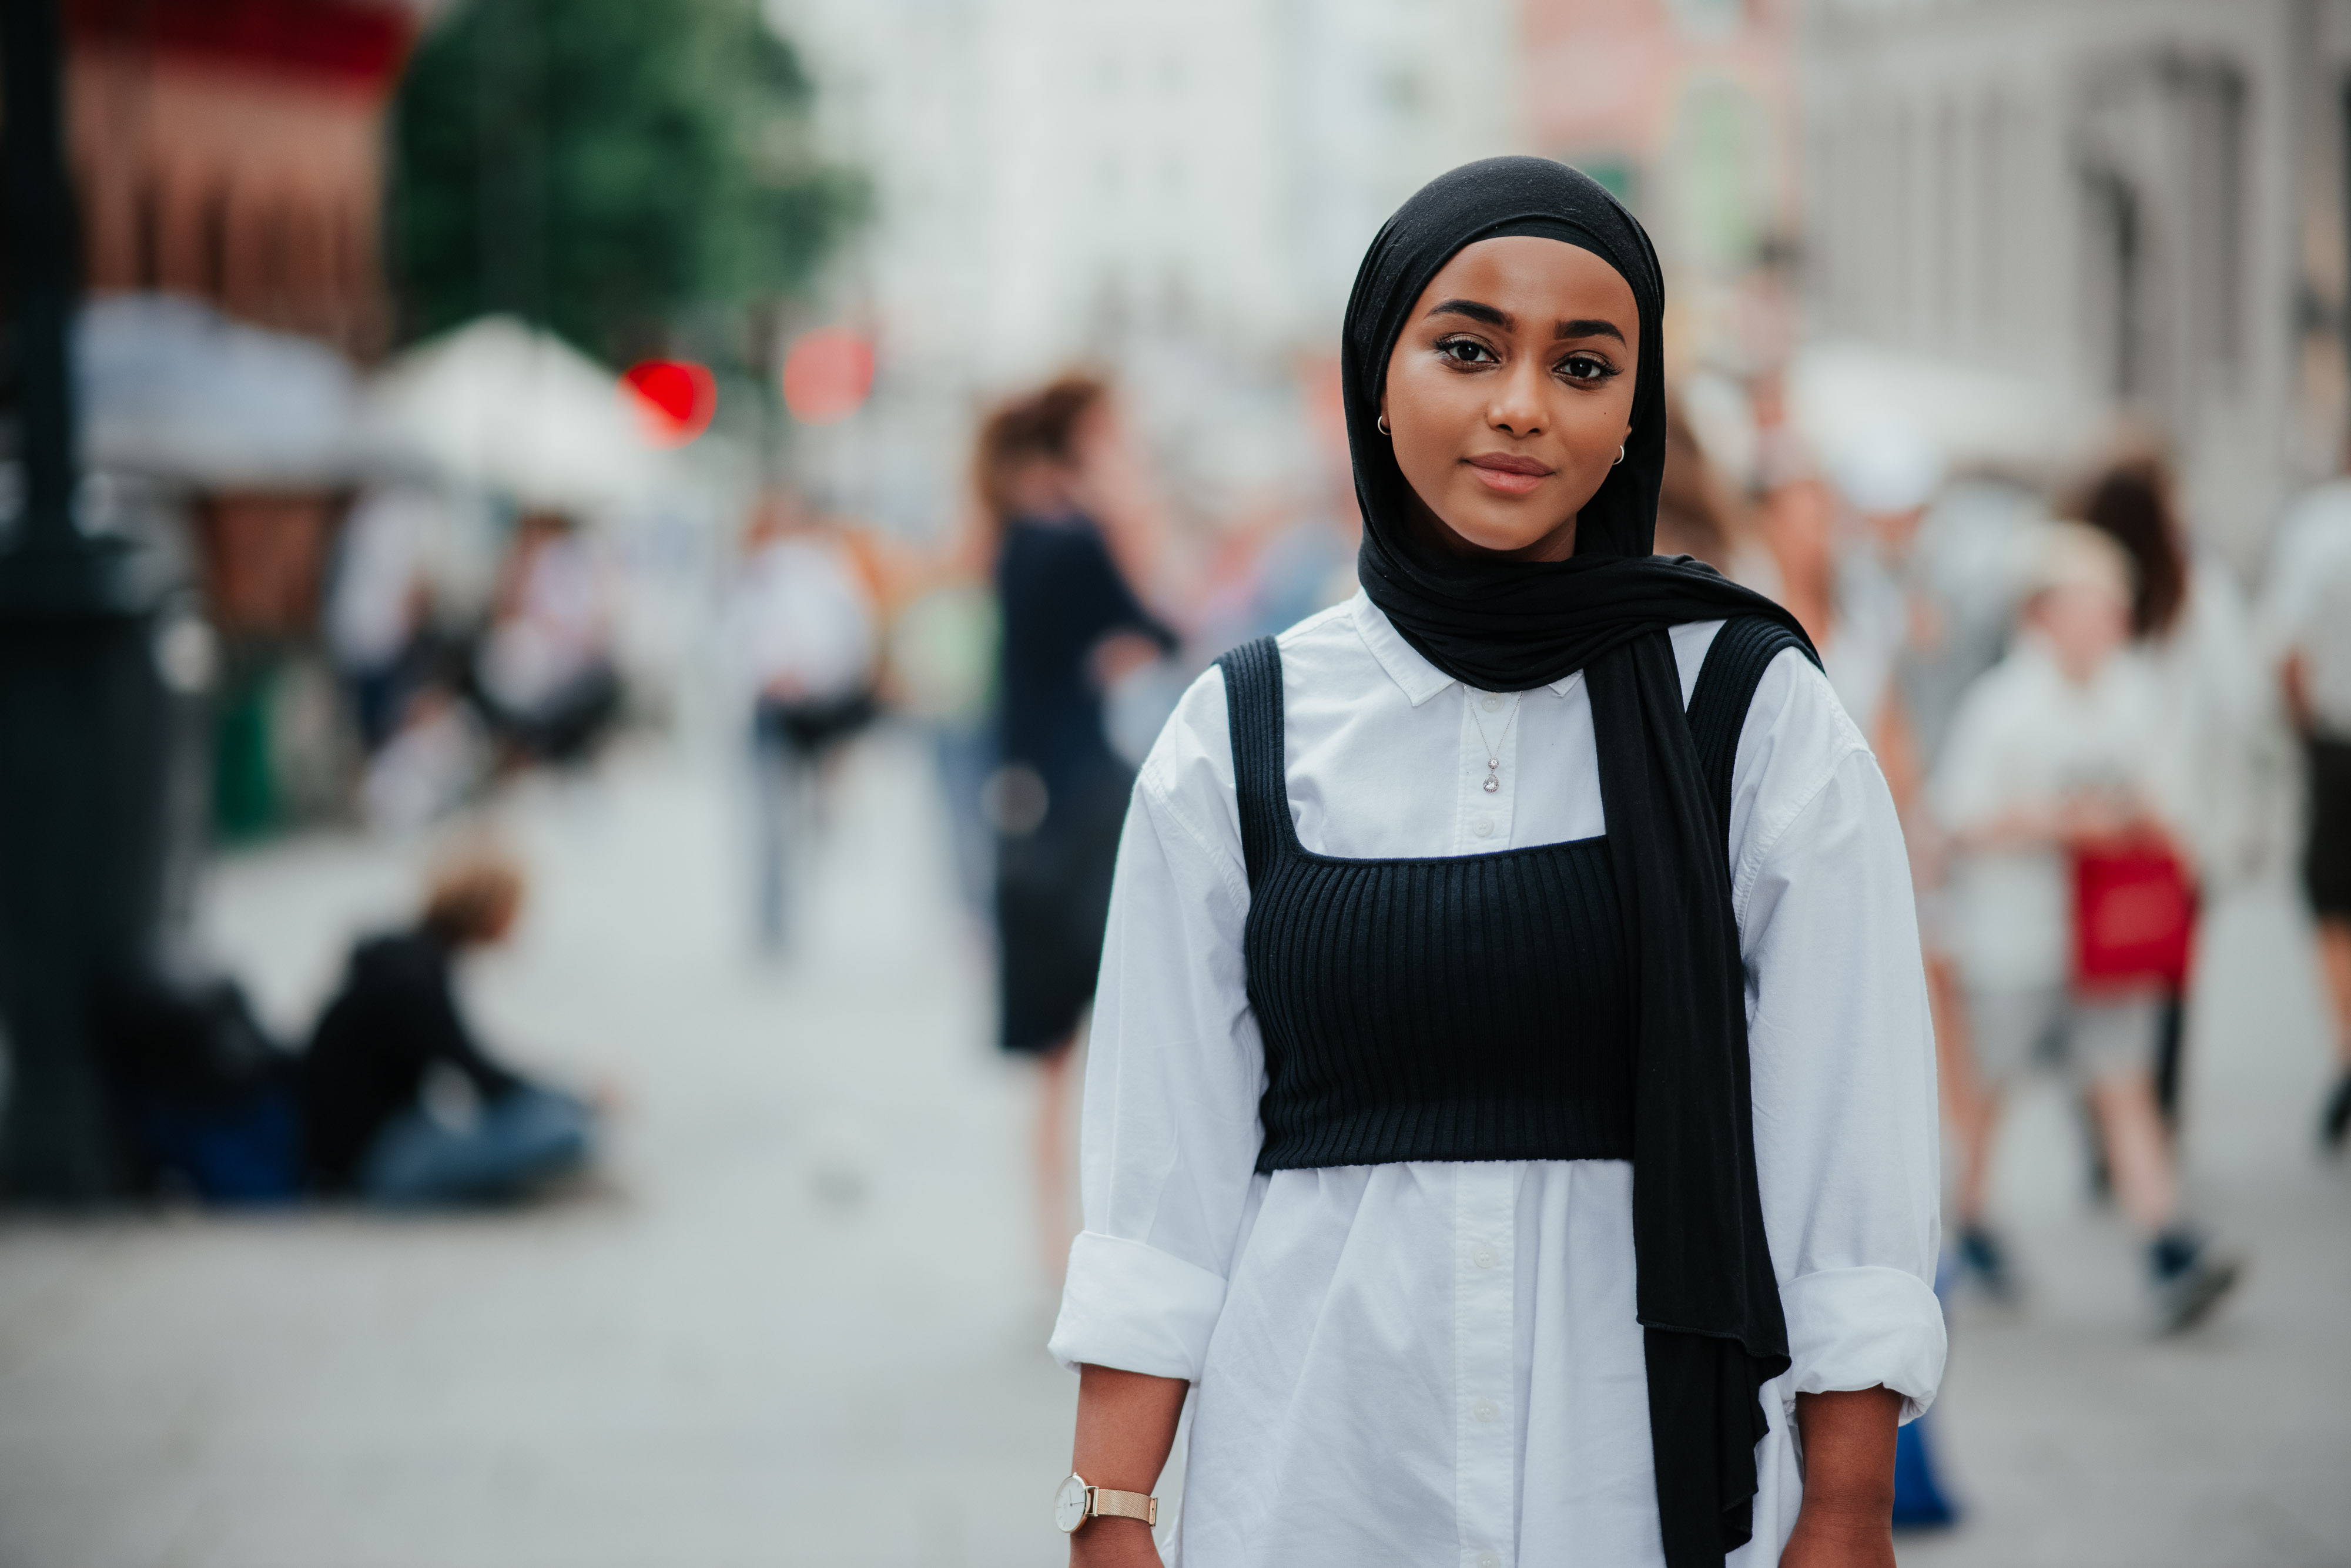 Ung kvinne i lys skjorte og hijab poserer for kamera.